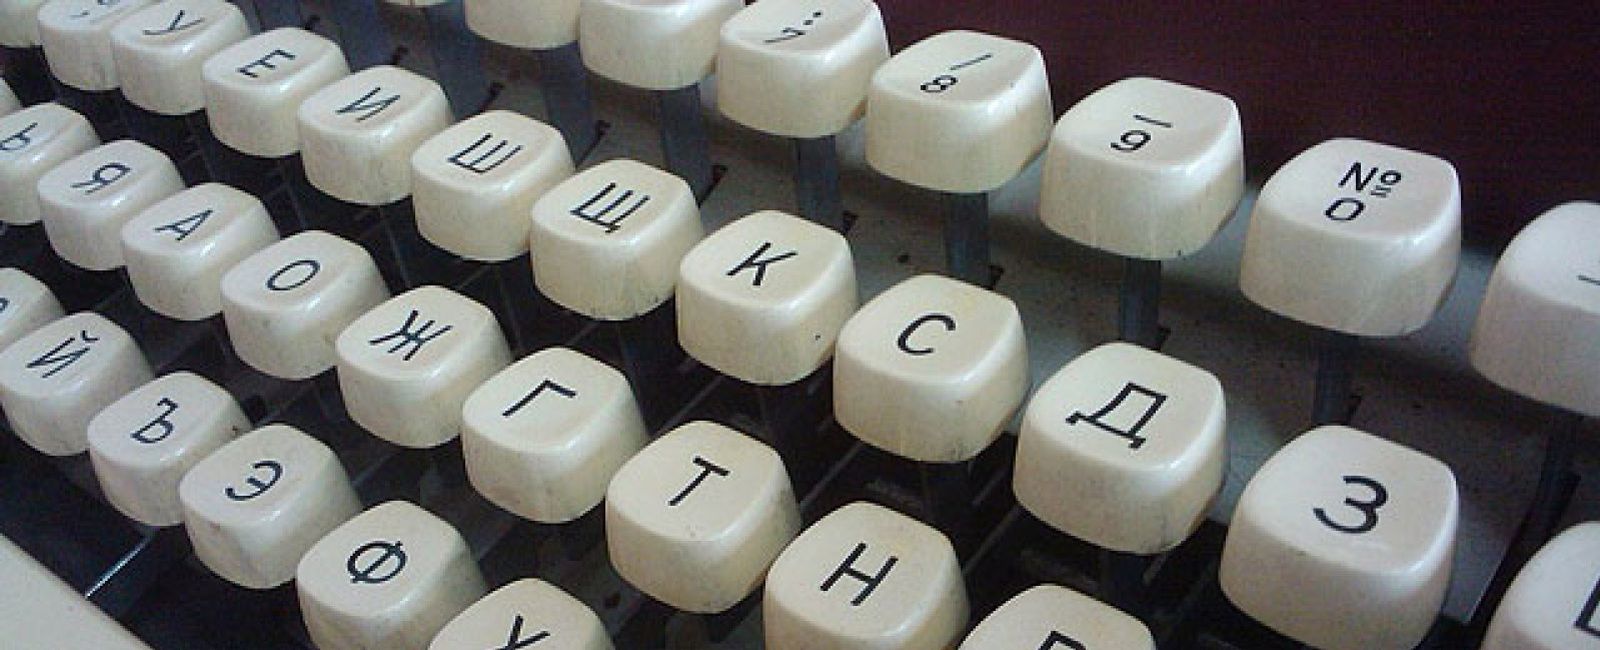 Foto: El Kremlin recupera la máquina de escribir como herramienta de inteligencia